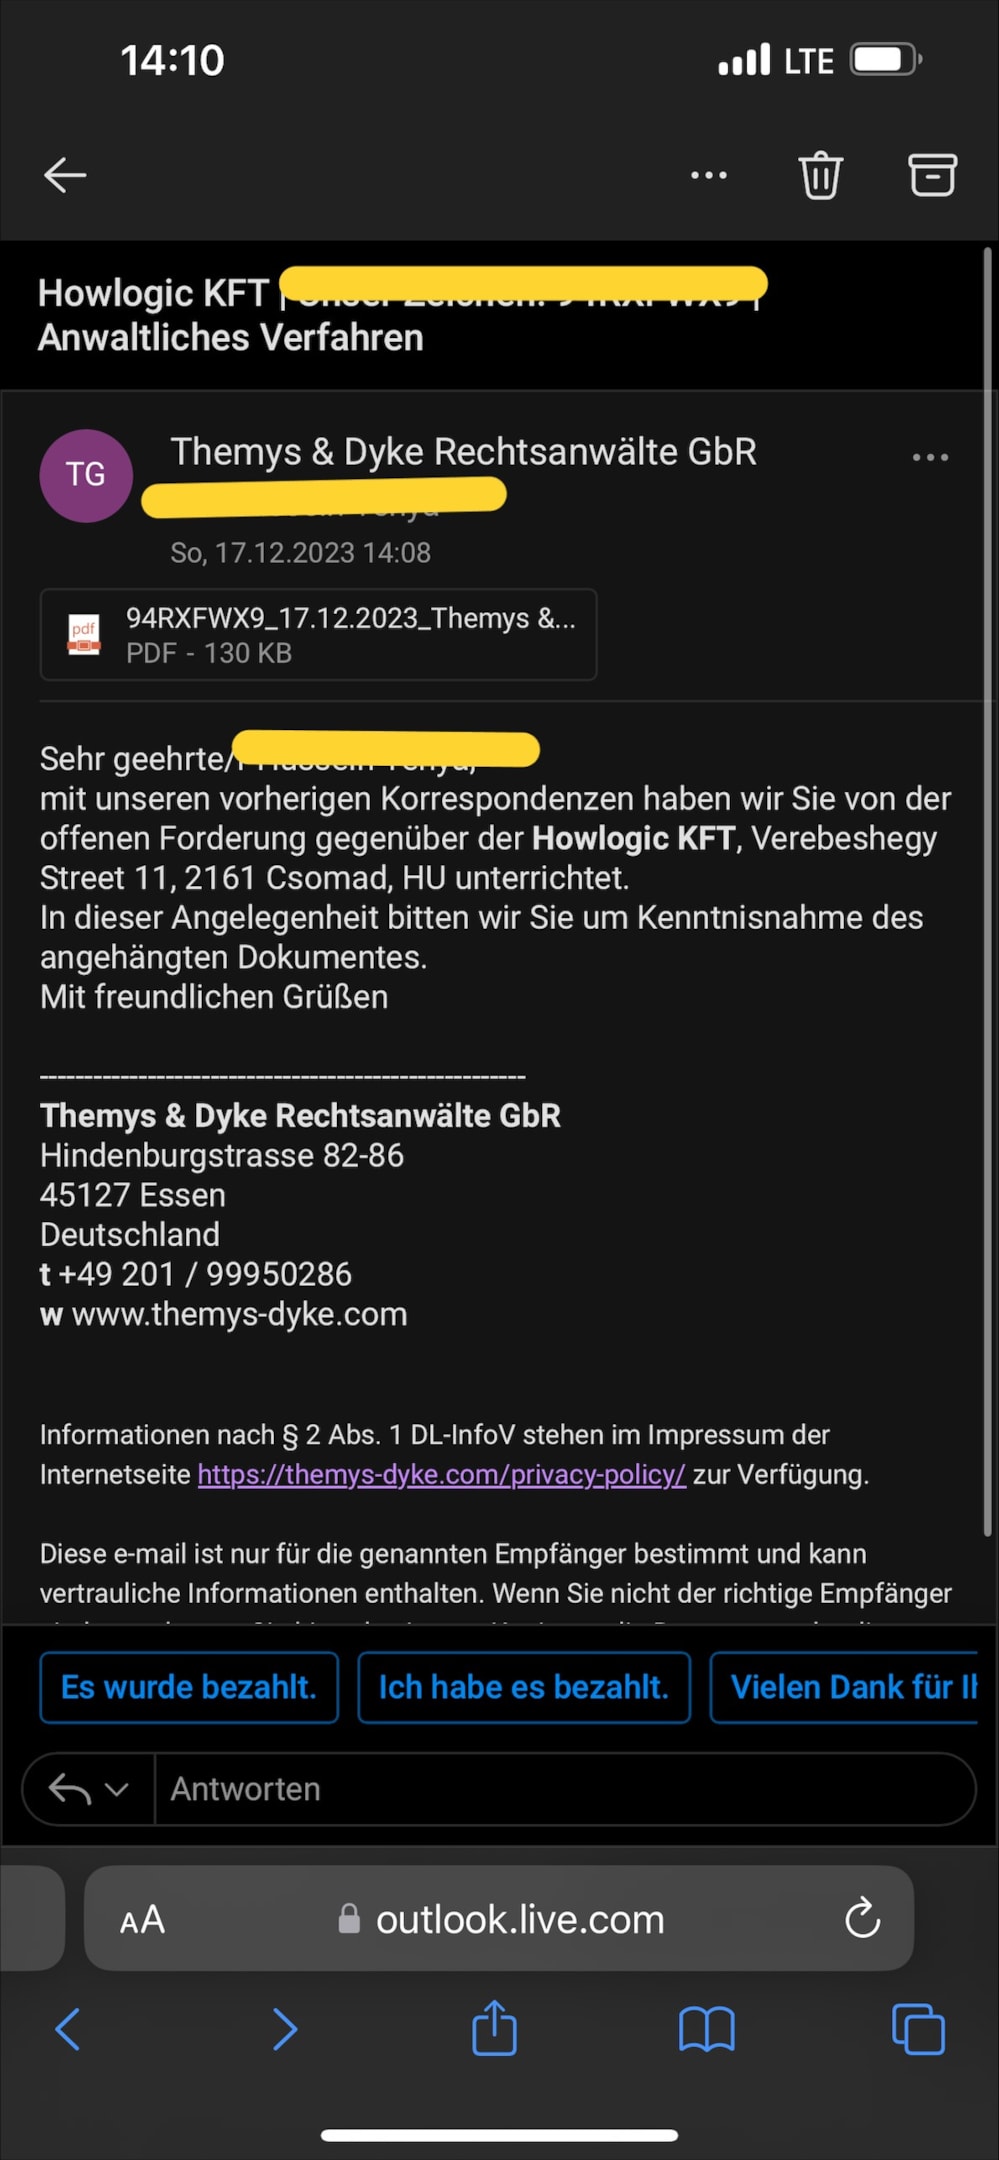 E-Mail von Themys & Dycke